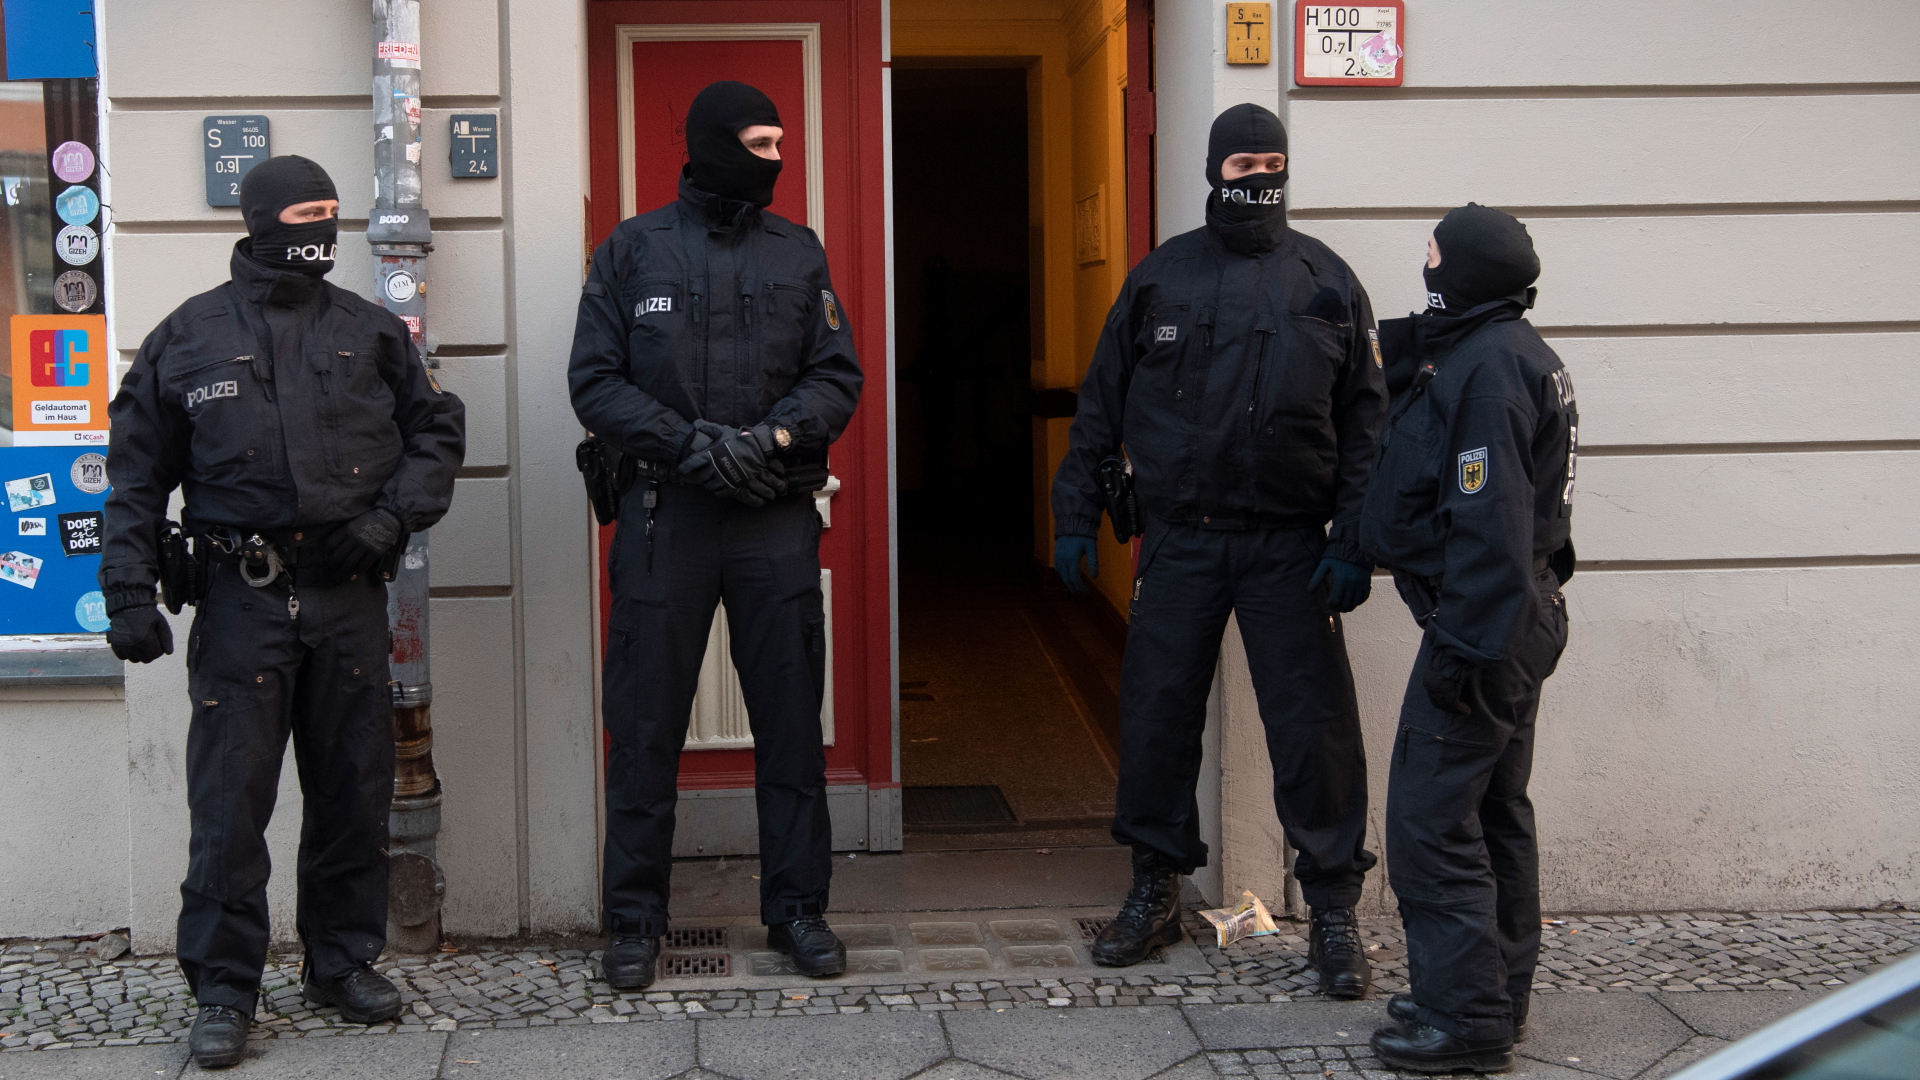 Polizisten stehen bei einer Razzia gegen eine mutmaßliche Schleuserbande an einer Eingangstür von einem Gebäude in Berlin